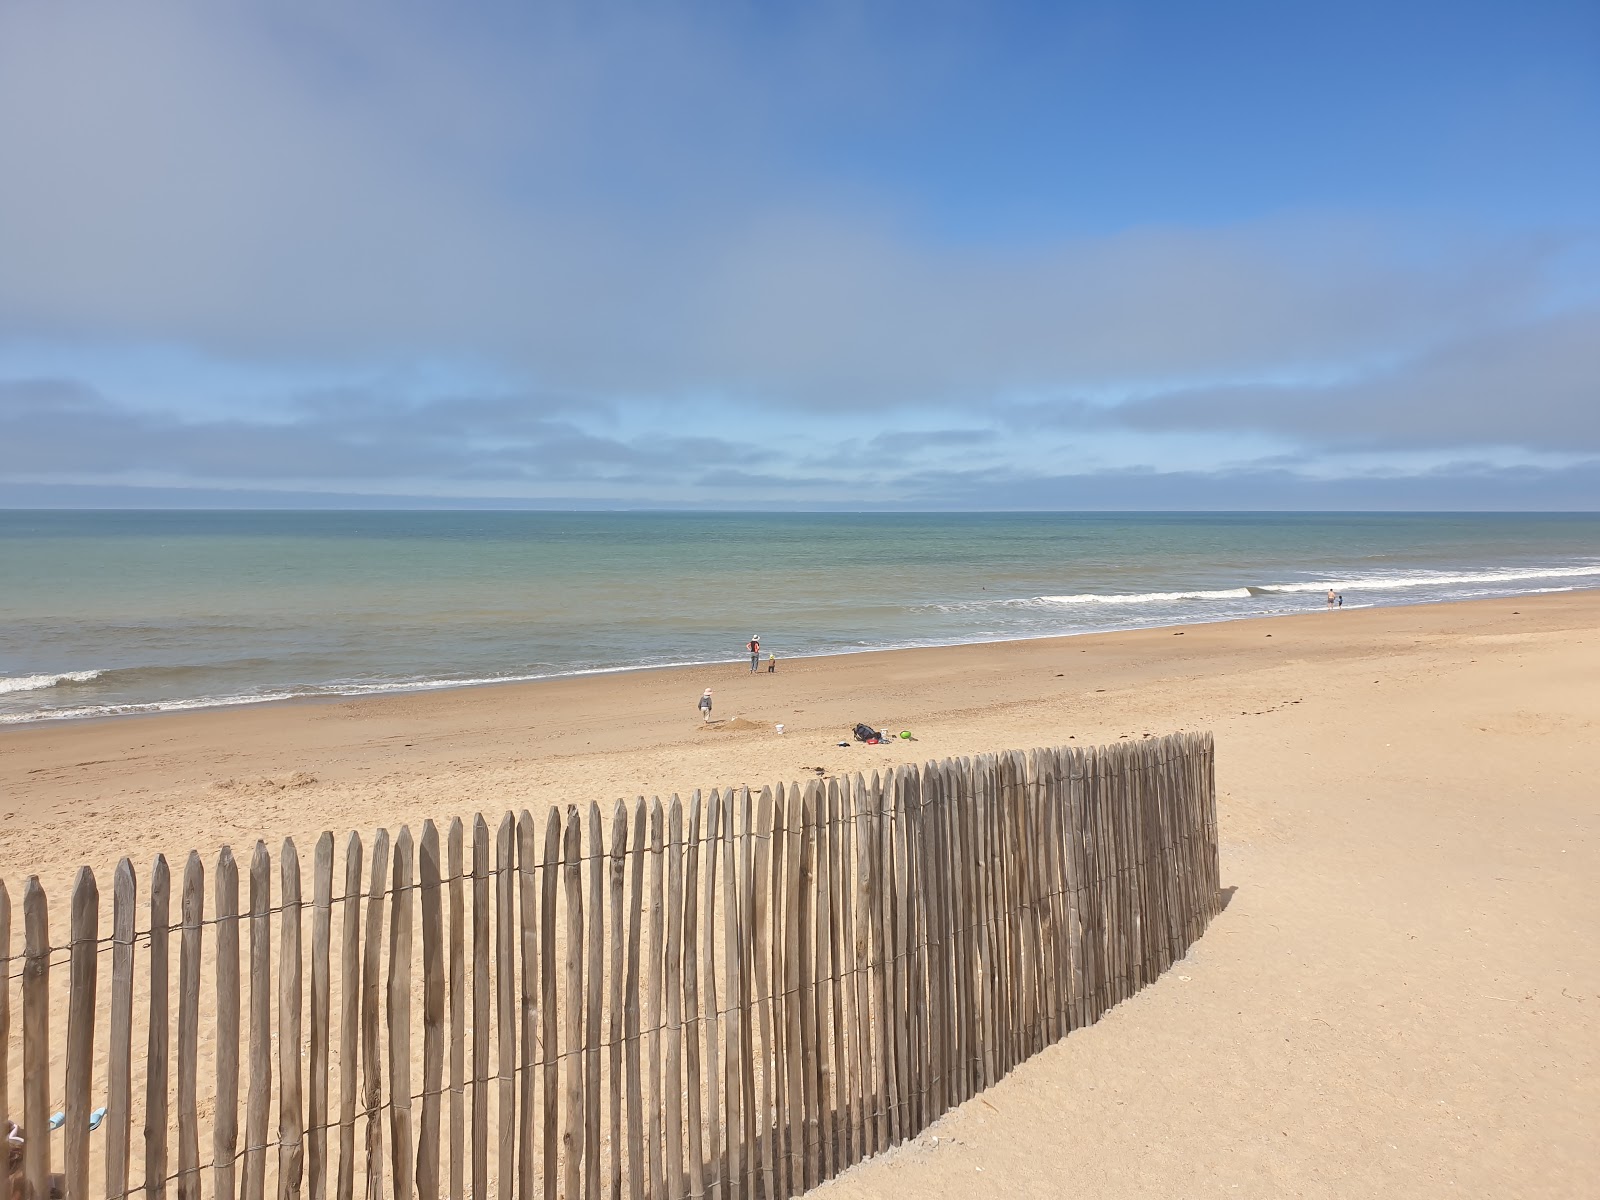 Zdjęcie Paree Preneau beach z powierzchnią jasny piasek